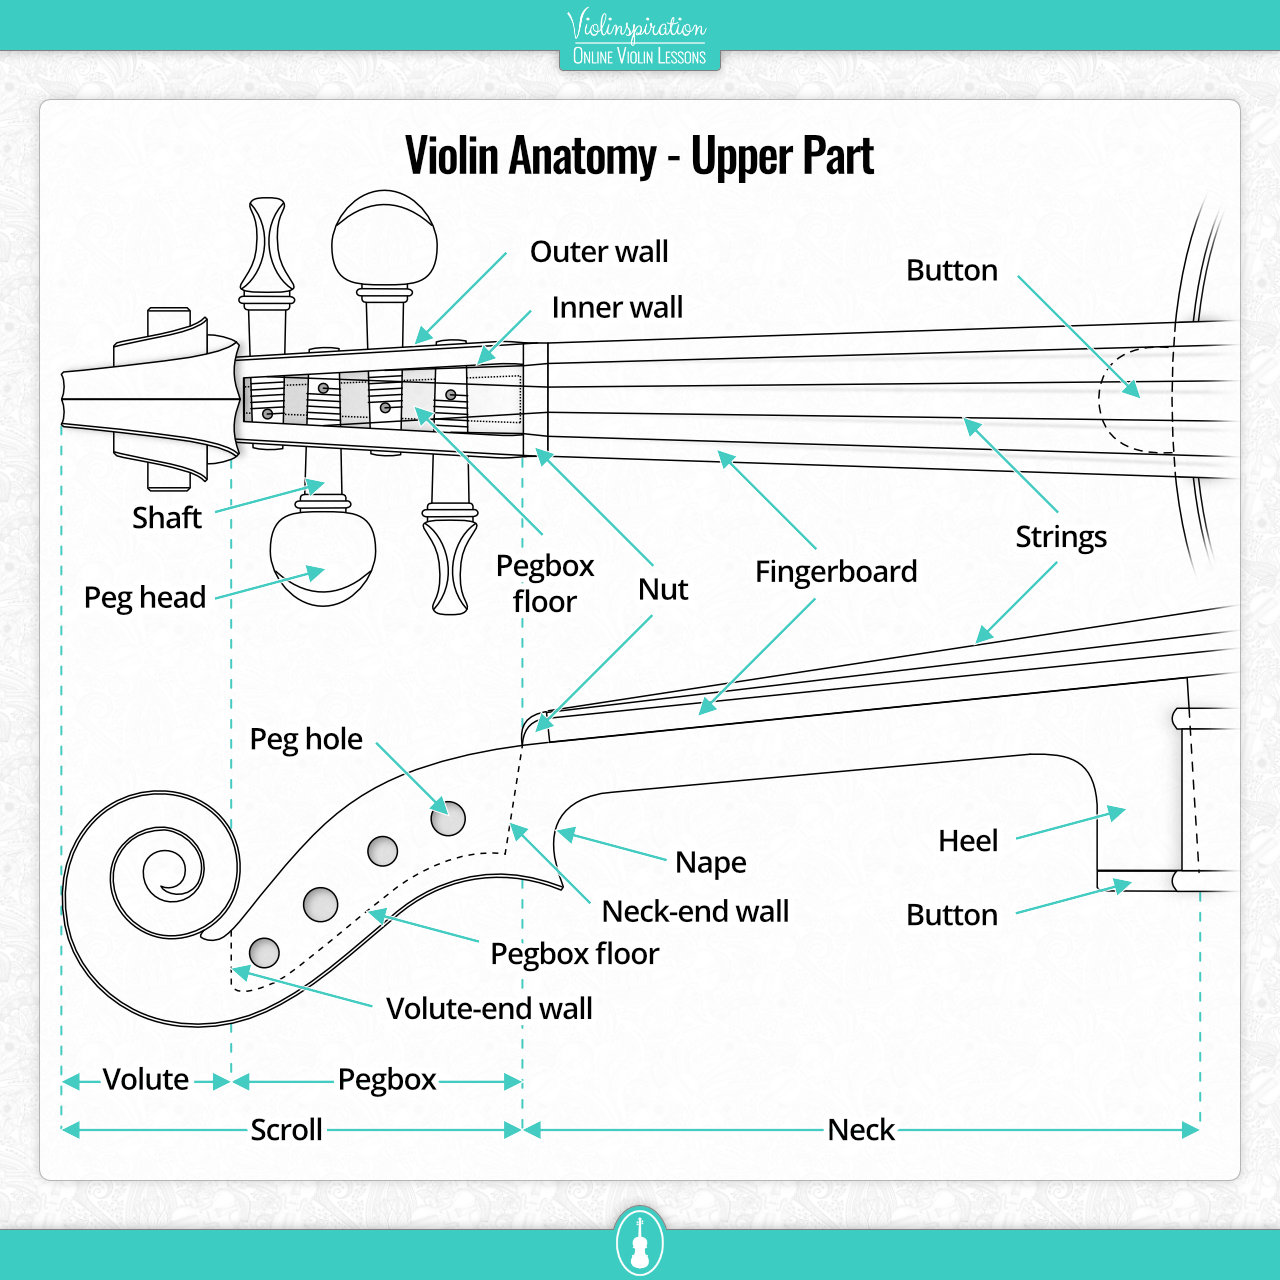 Violin Anatomy - Upper Part